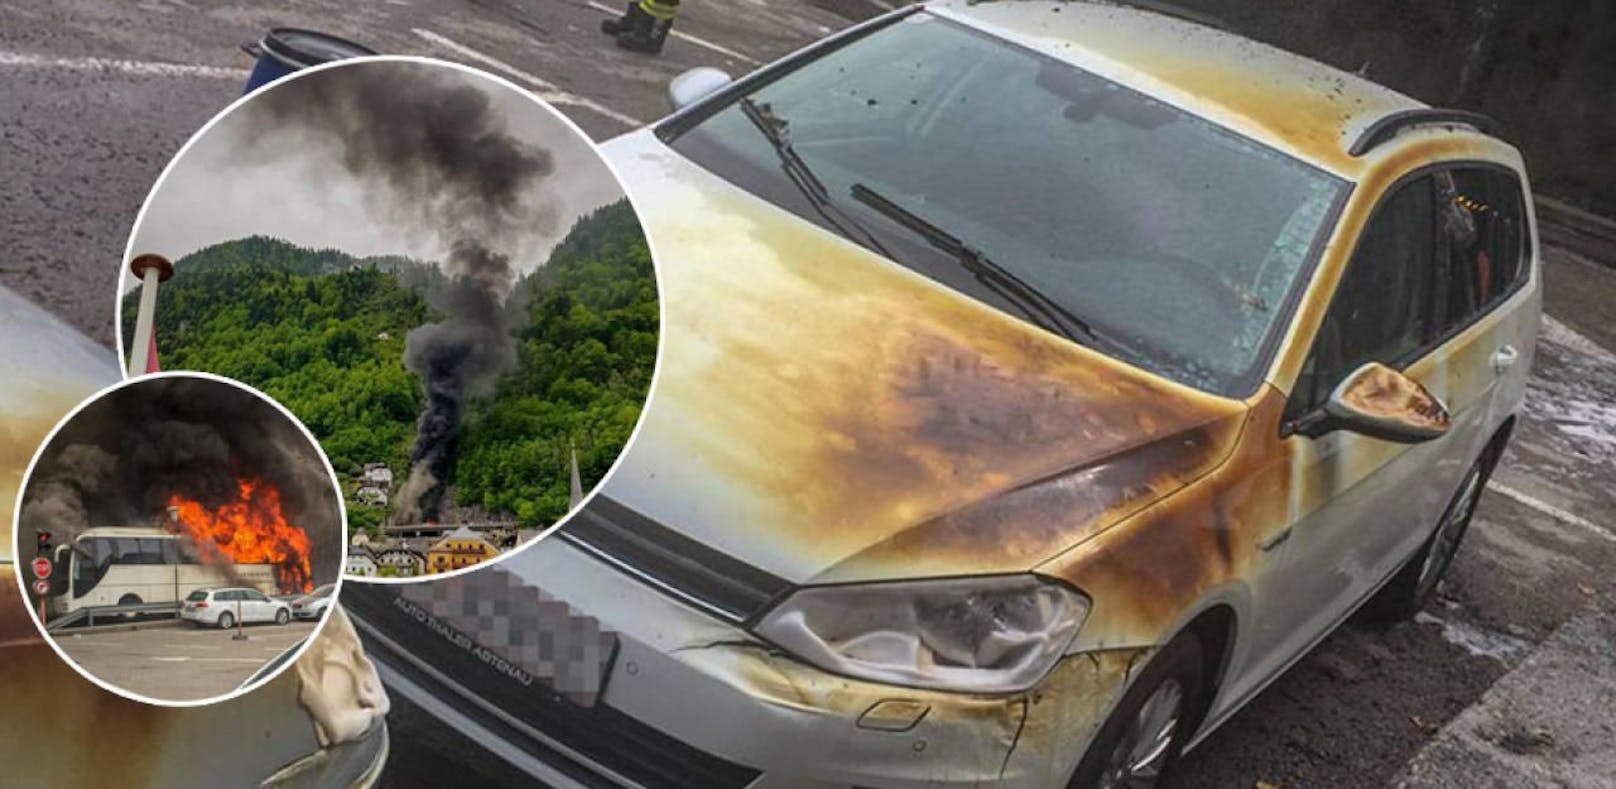 Geparkte Autos schmolzen in der Feuersbrunst